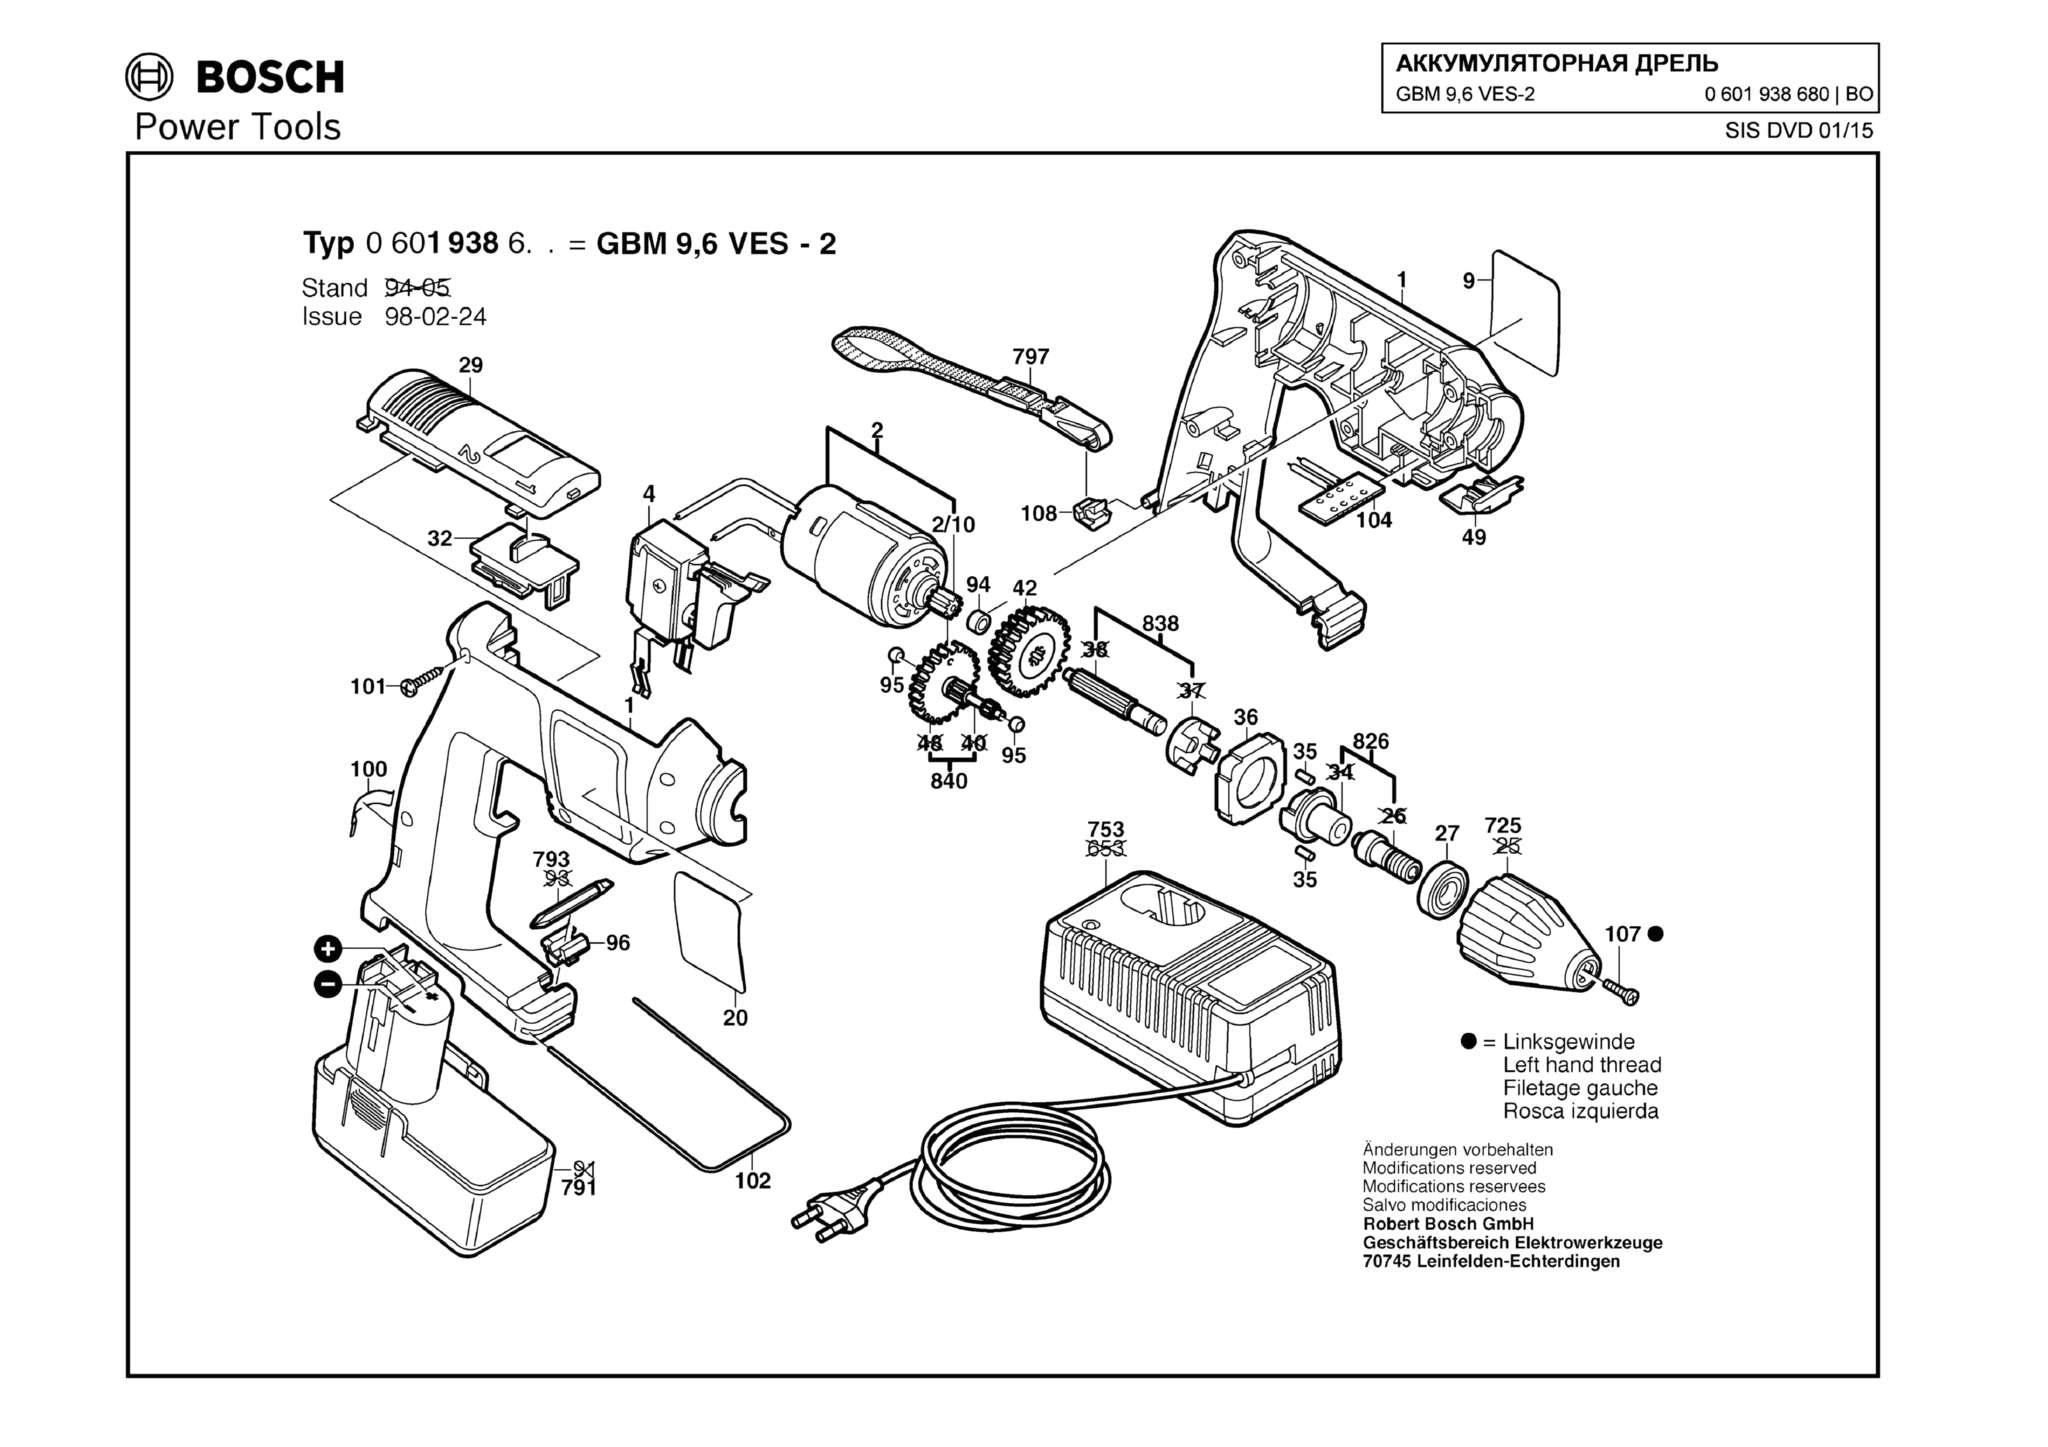 Запчасти, схема и деталировка Bosch GBM 9,6 VES-2 (ТИП 0601938680)